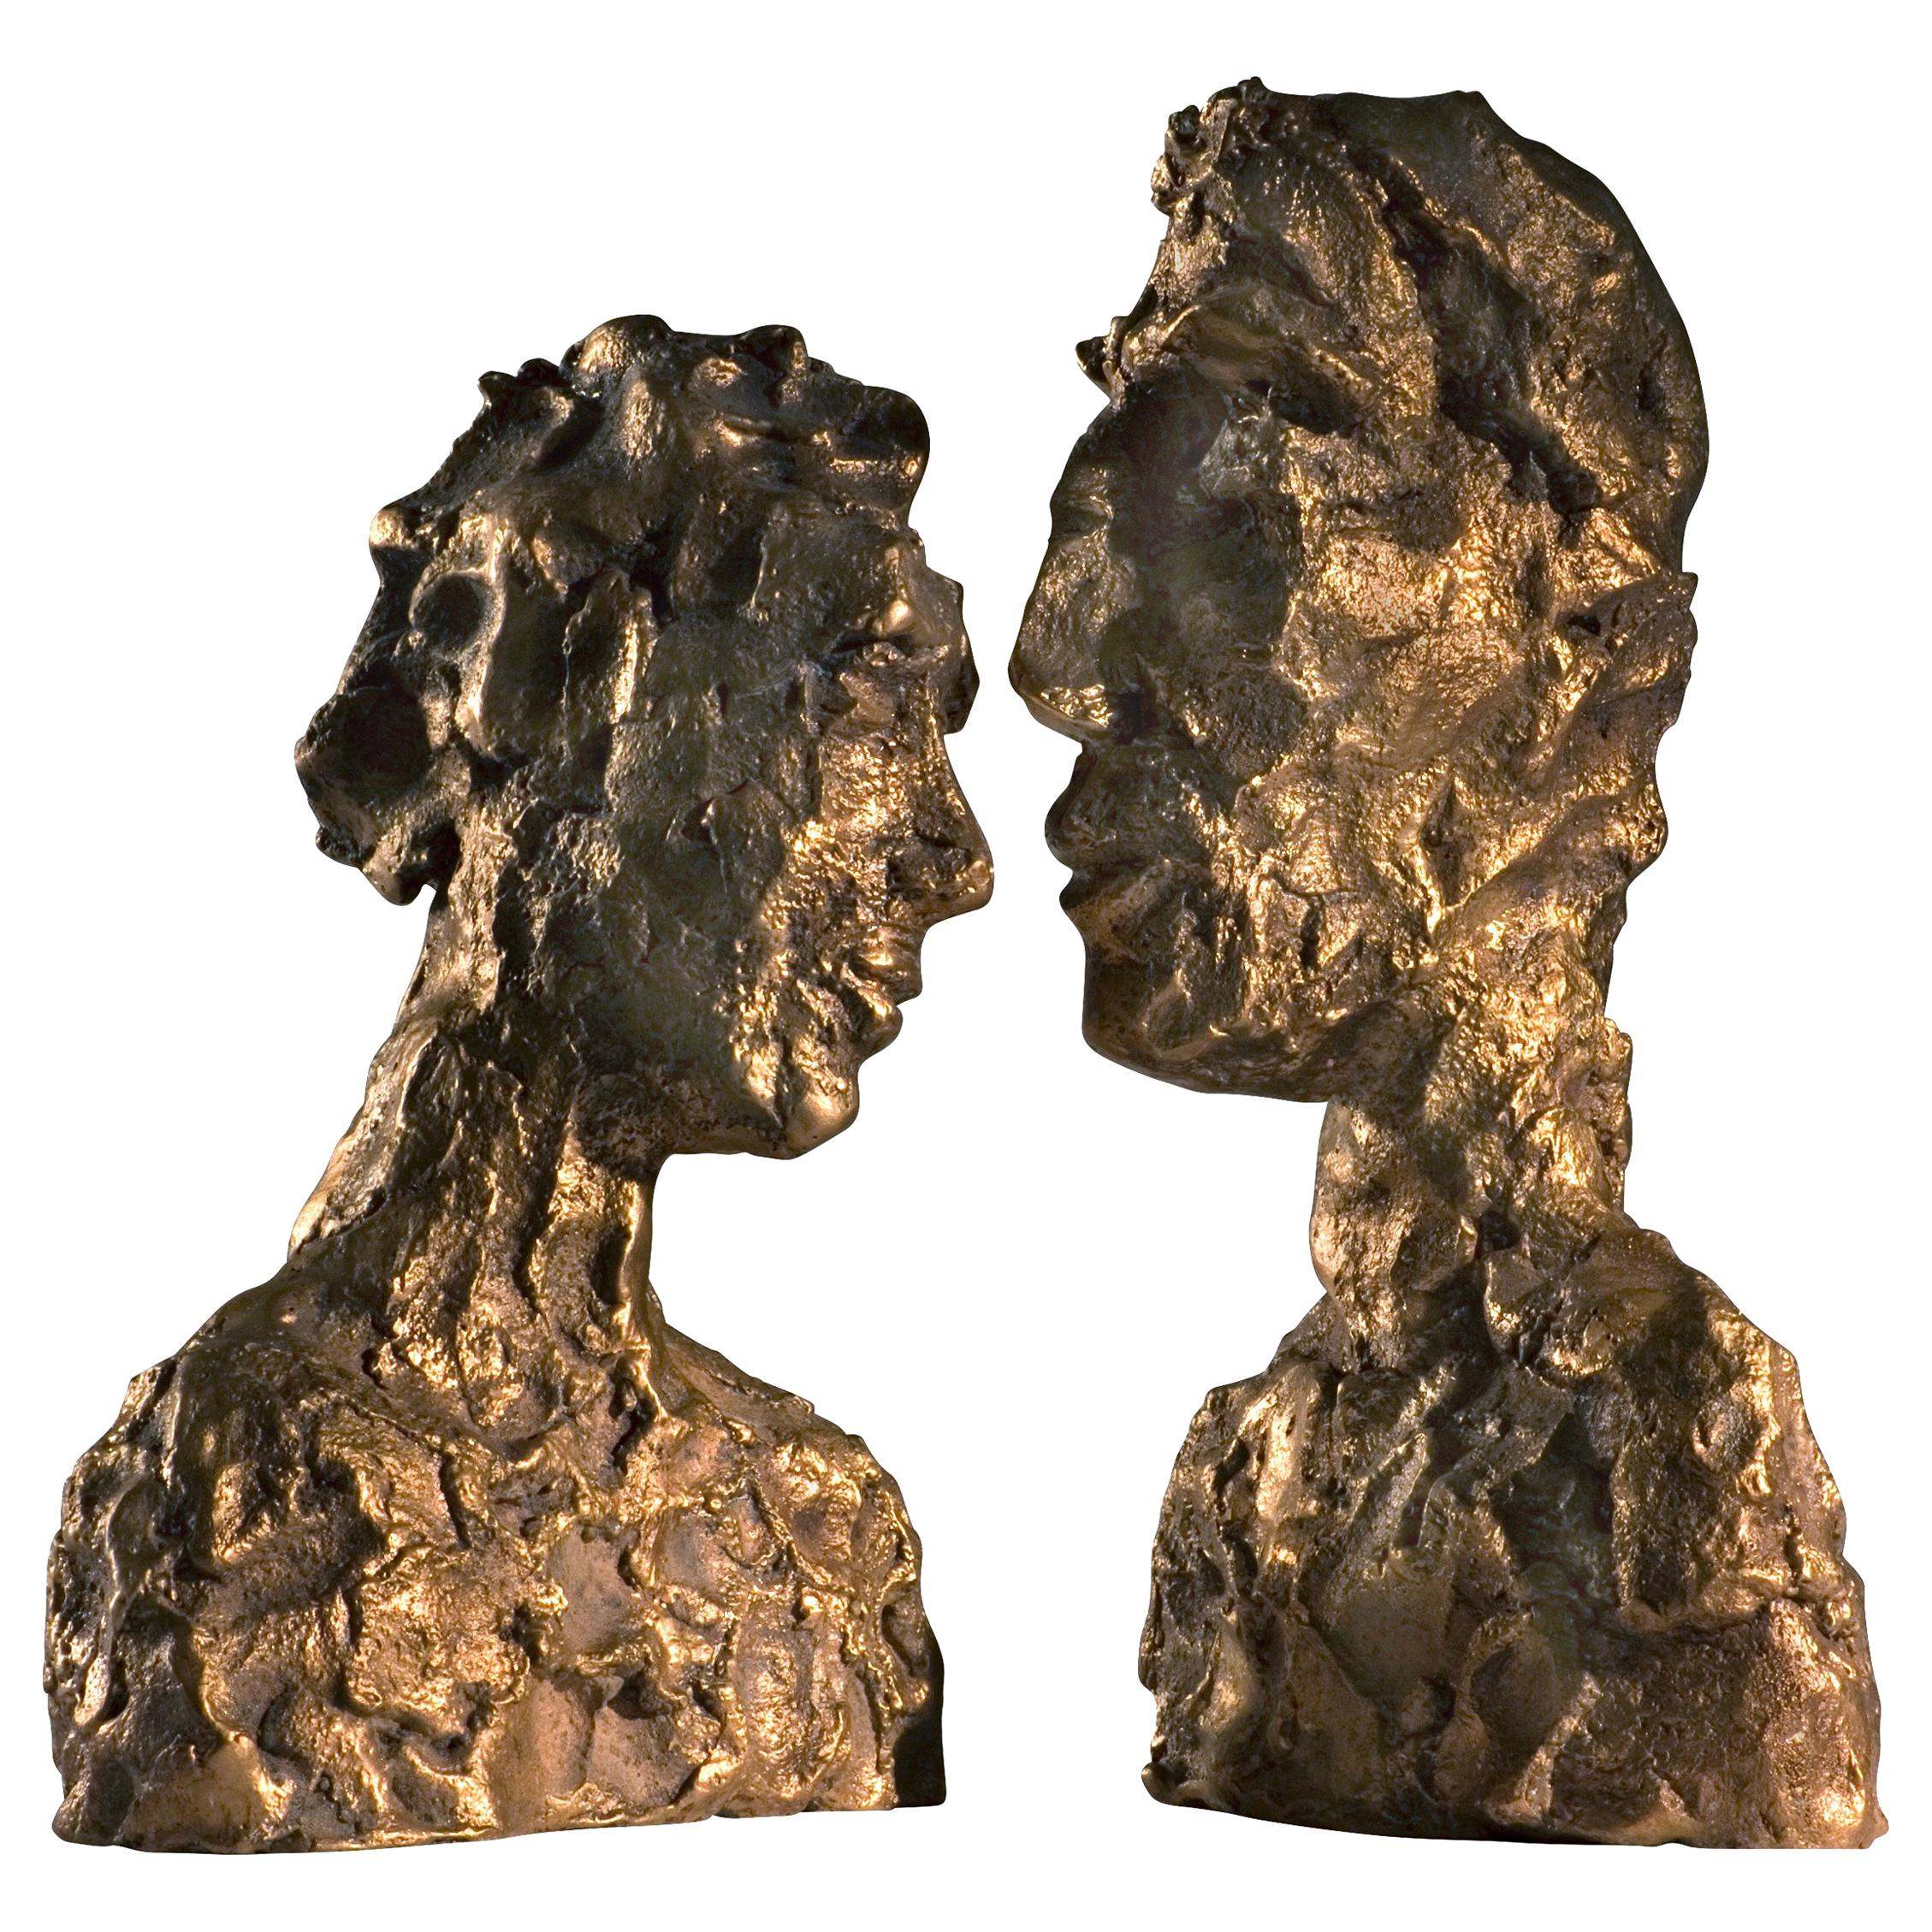 Zeitgenössische Skulptur aus Rohbronze des 21. Jahrhunderts, „Emotion“ von Margit Wittig